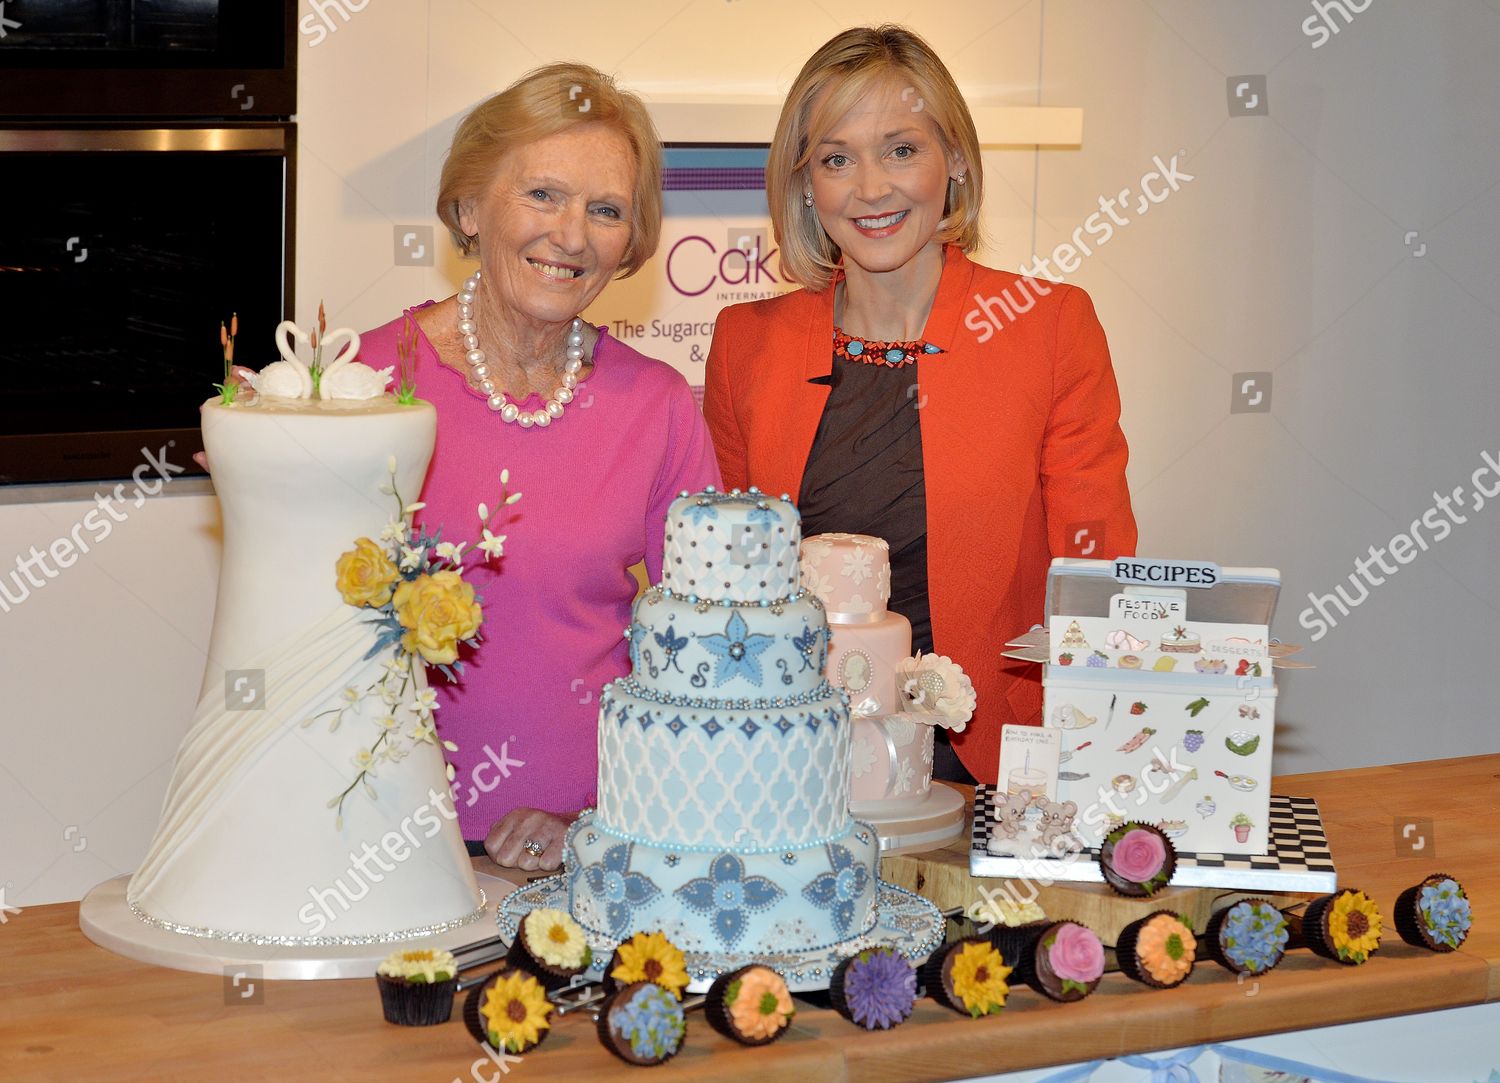 Mary Berry Cake #wedding #cake #weddingcake #nakedcake #exposedcake  #CrippsBarn | Fancy cakes, Mary berry cakes, Luxury wedding cake